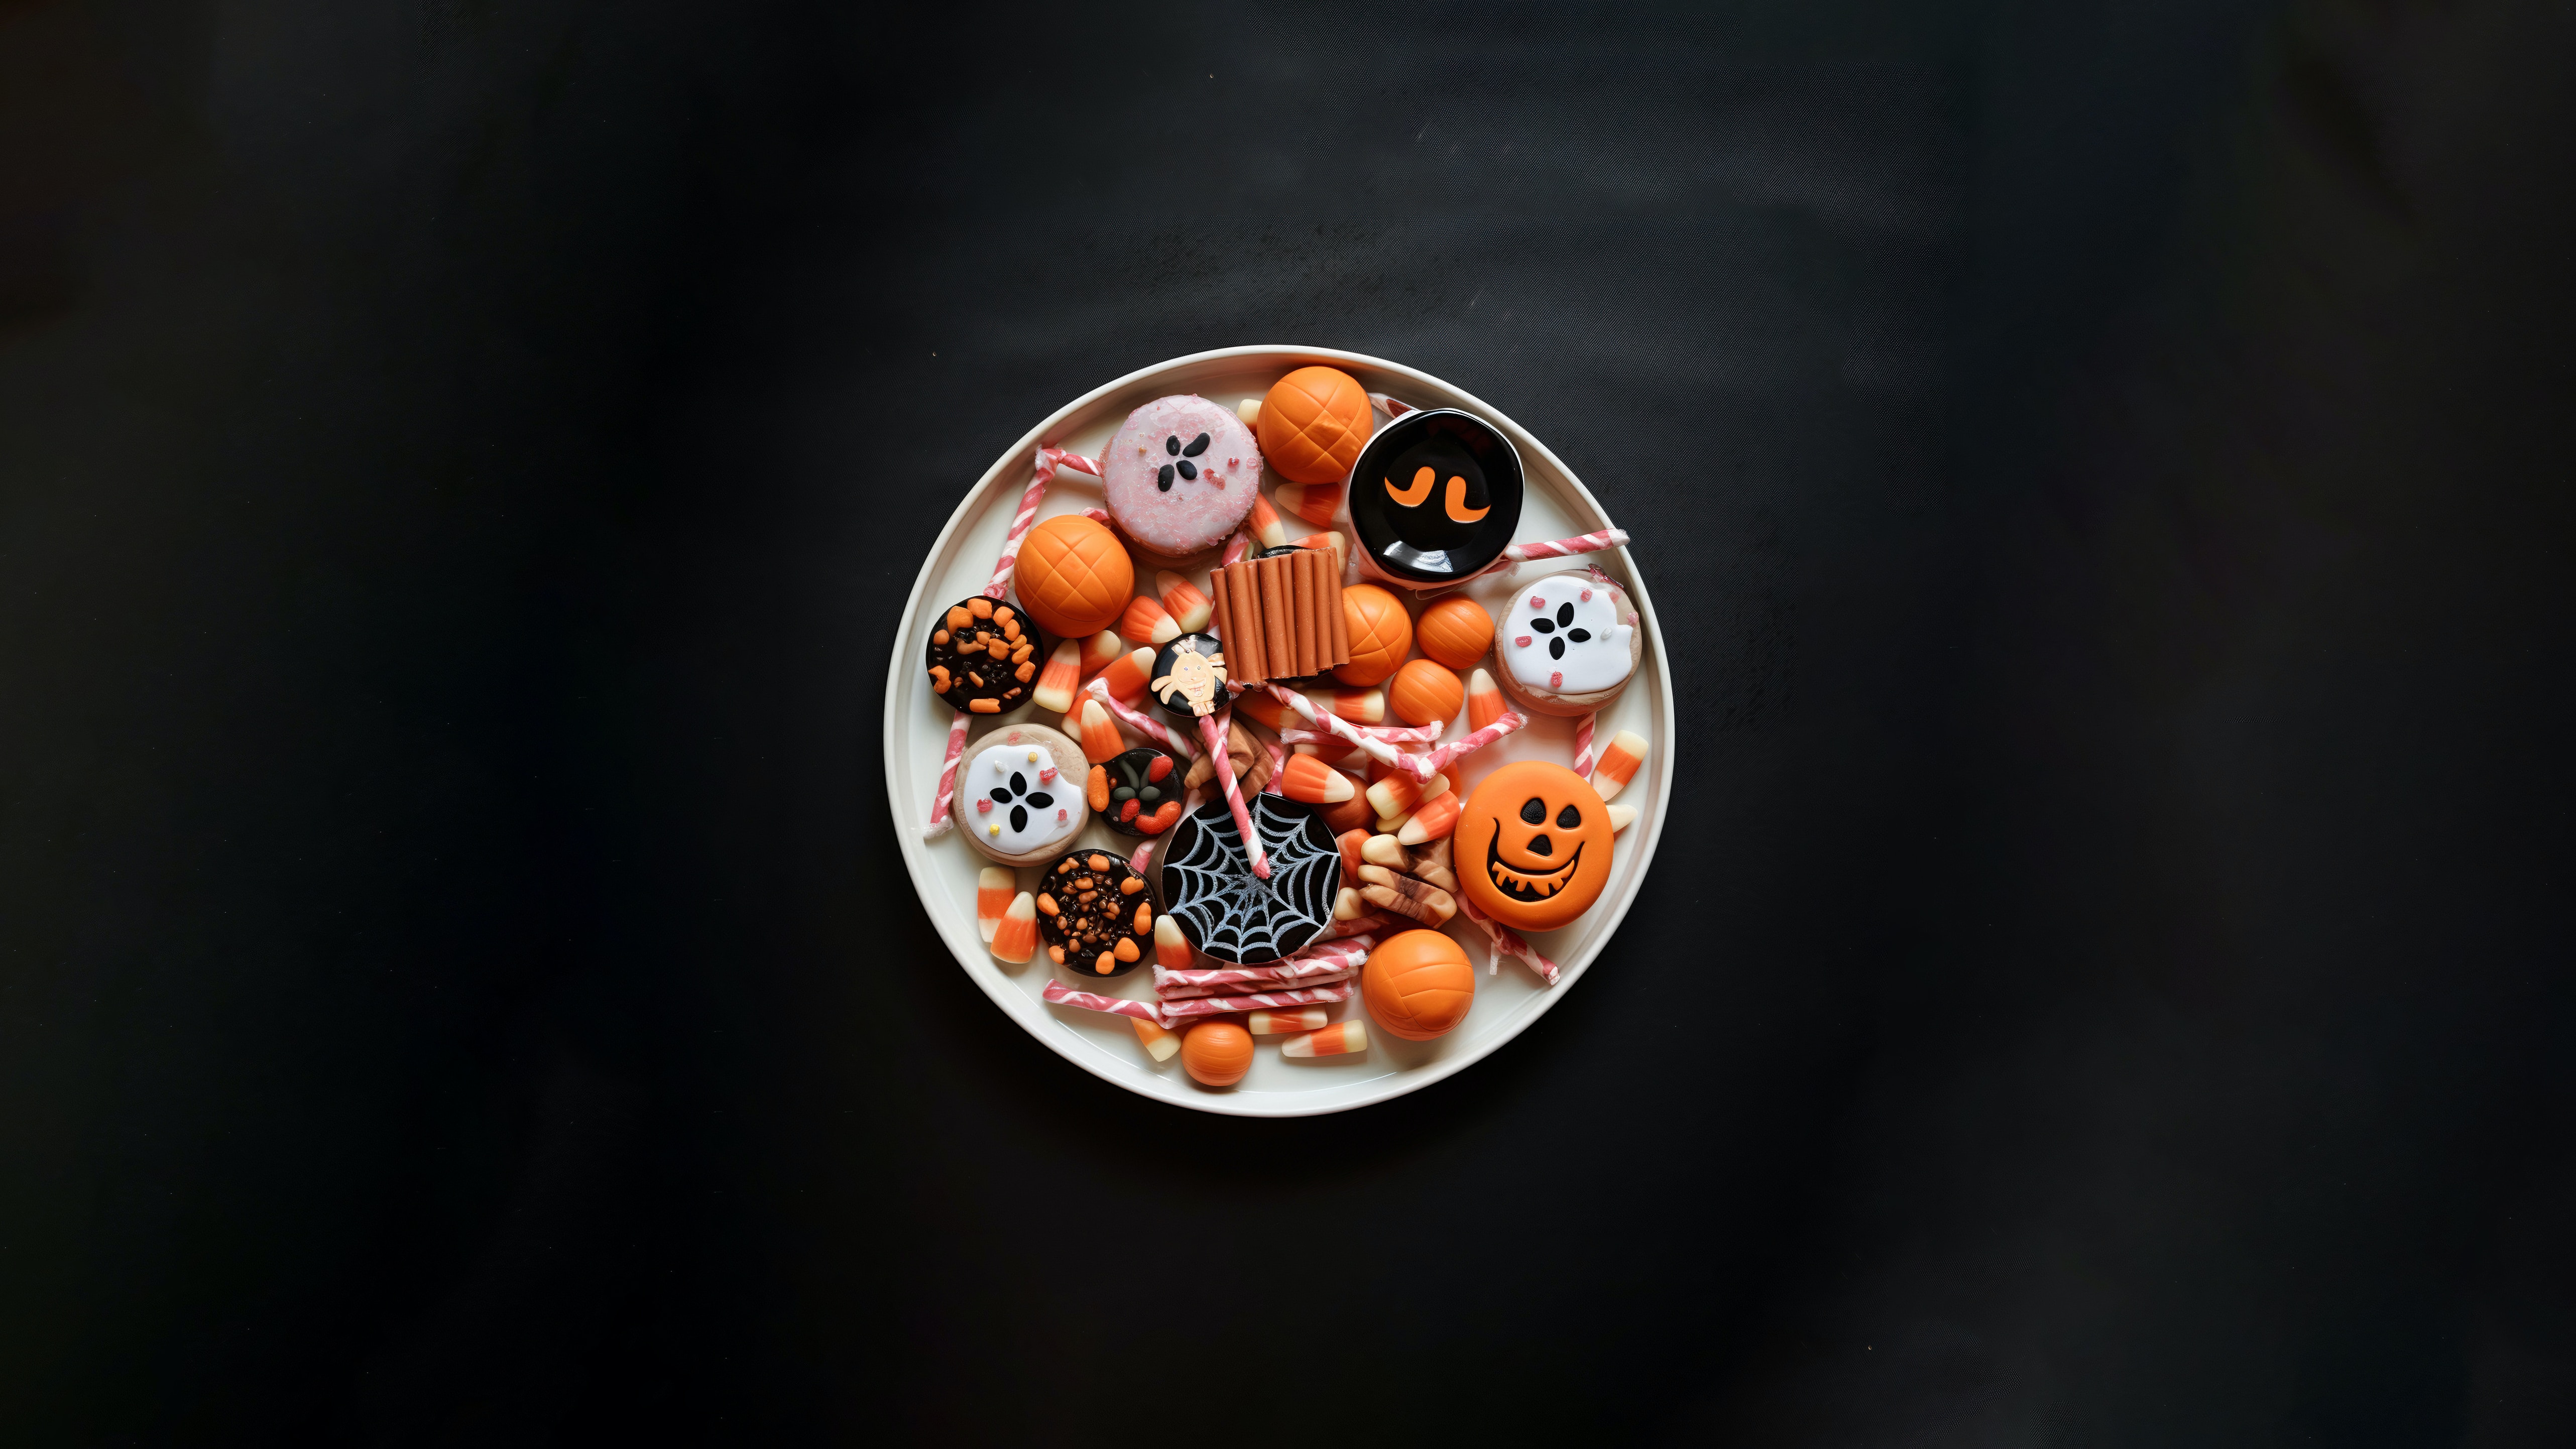 Μια άγνωστη ιστορία για το Halloween: Όταν τα ζαχαρωτά έγιναν αιτία να πεθάνει κόσμος